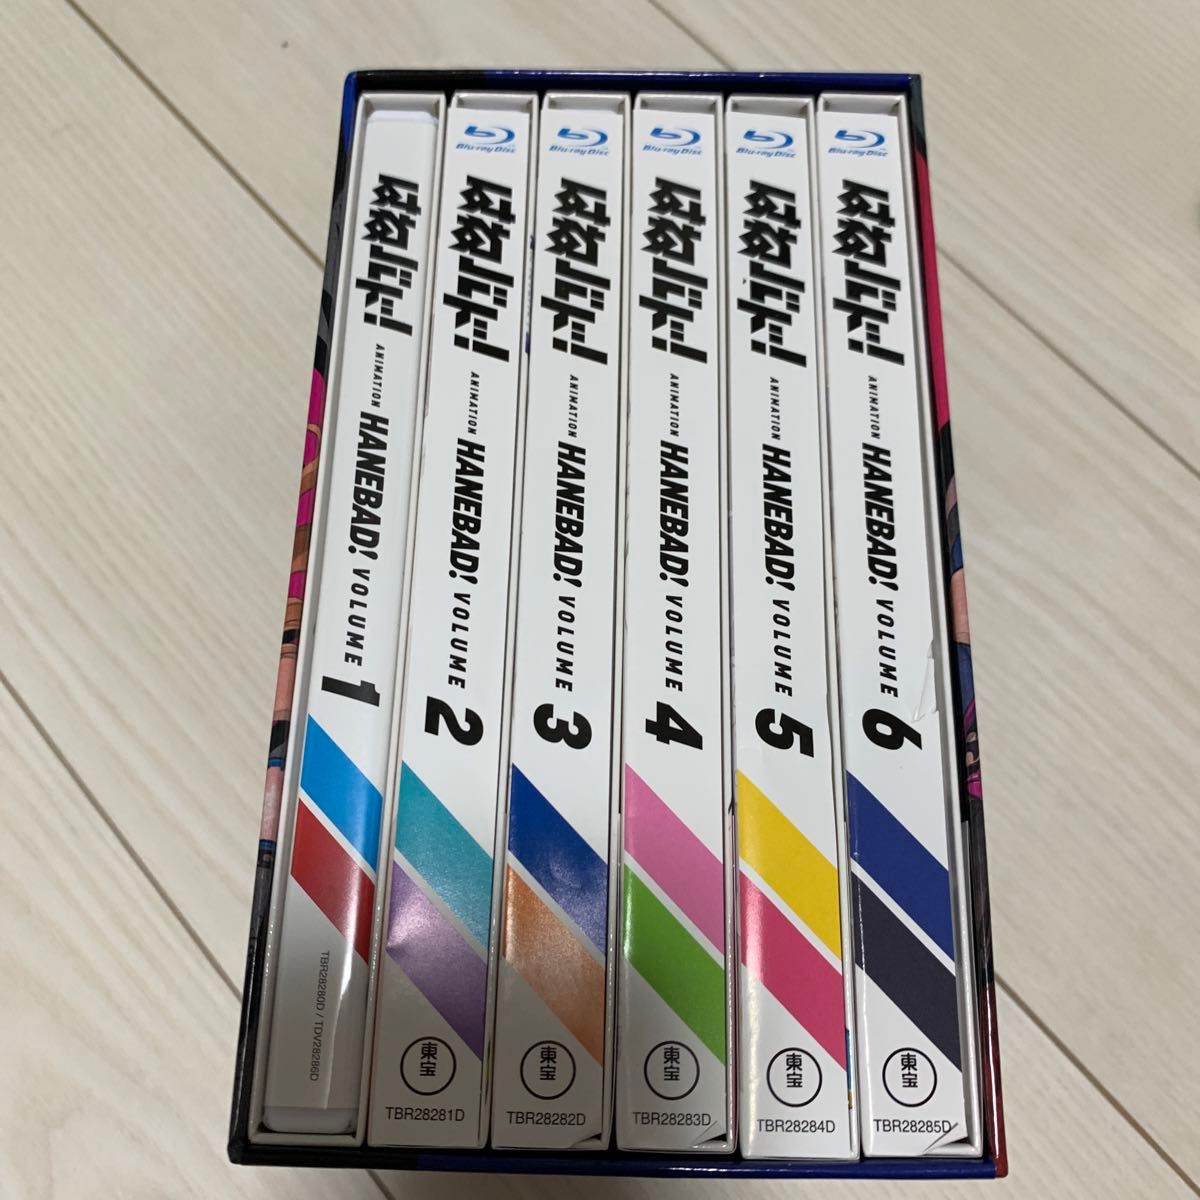 アニメ 「はねバド!」 Vol.1 (Blu-ray Disc) はねバド!